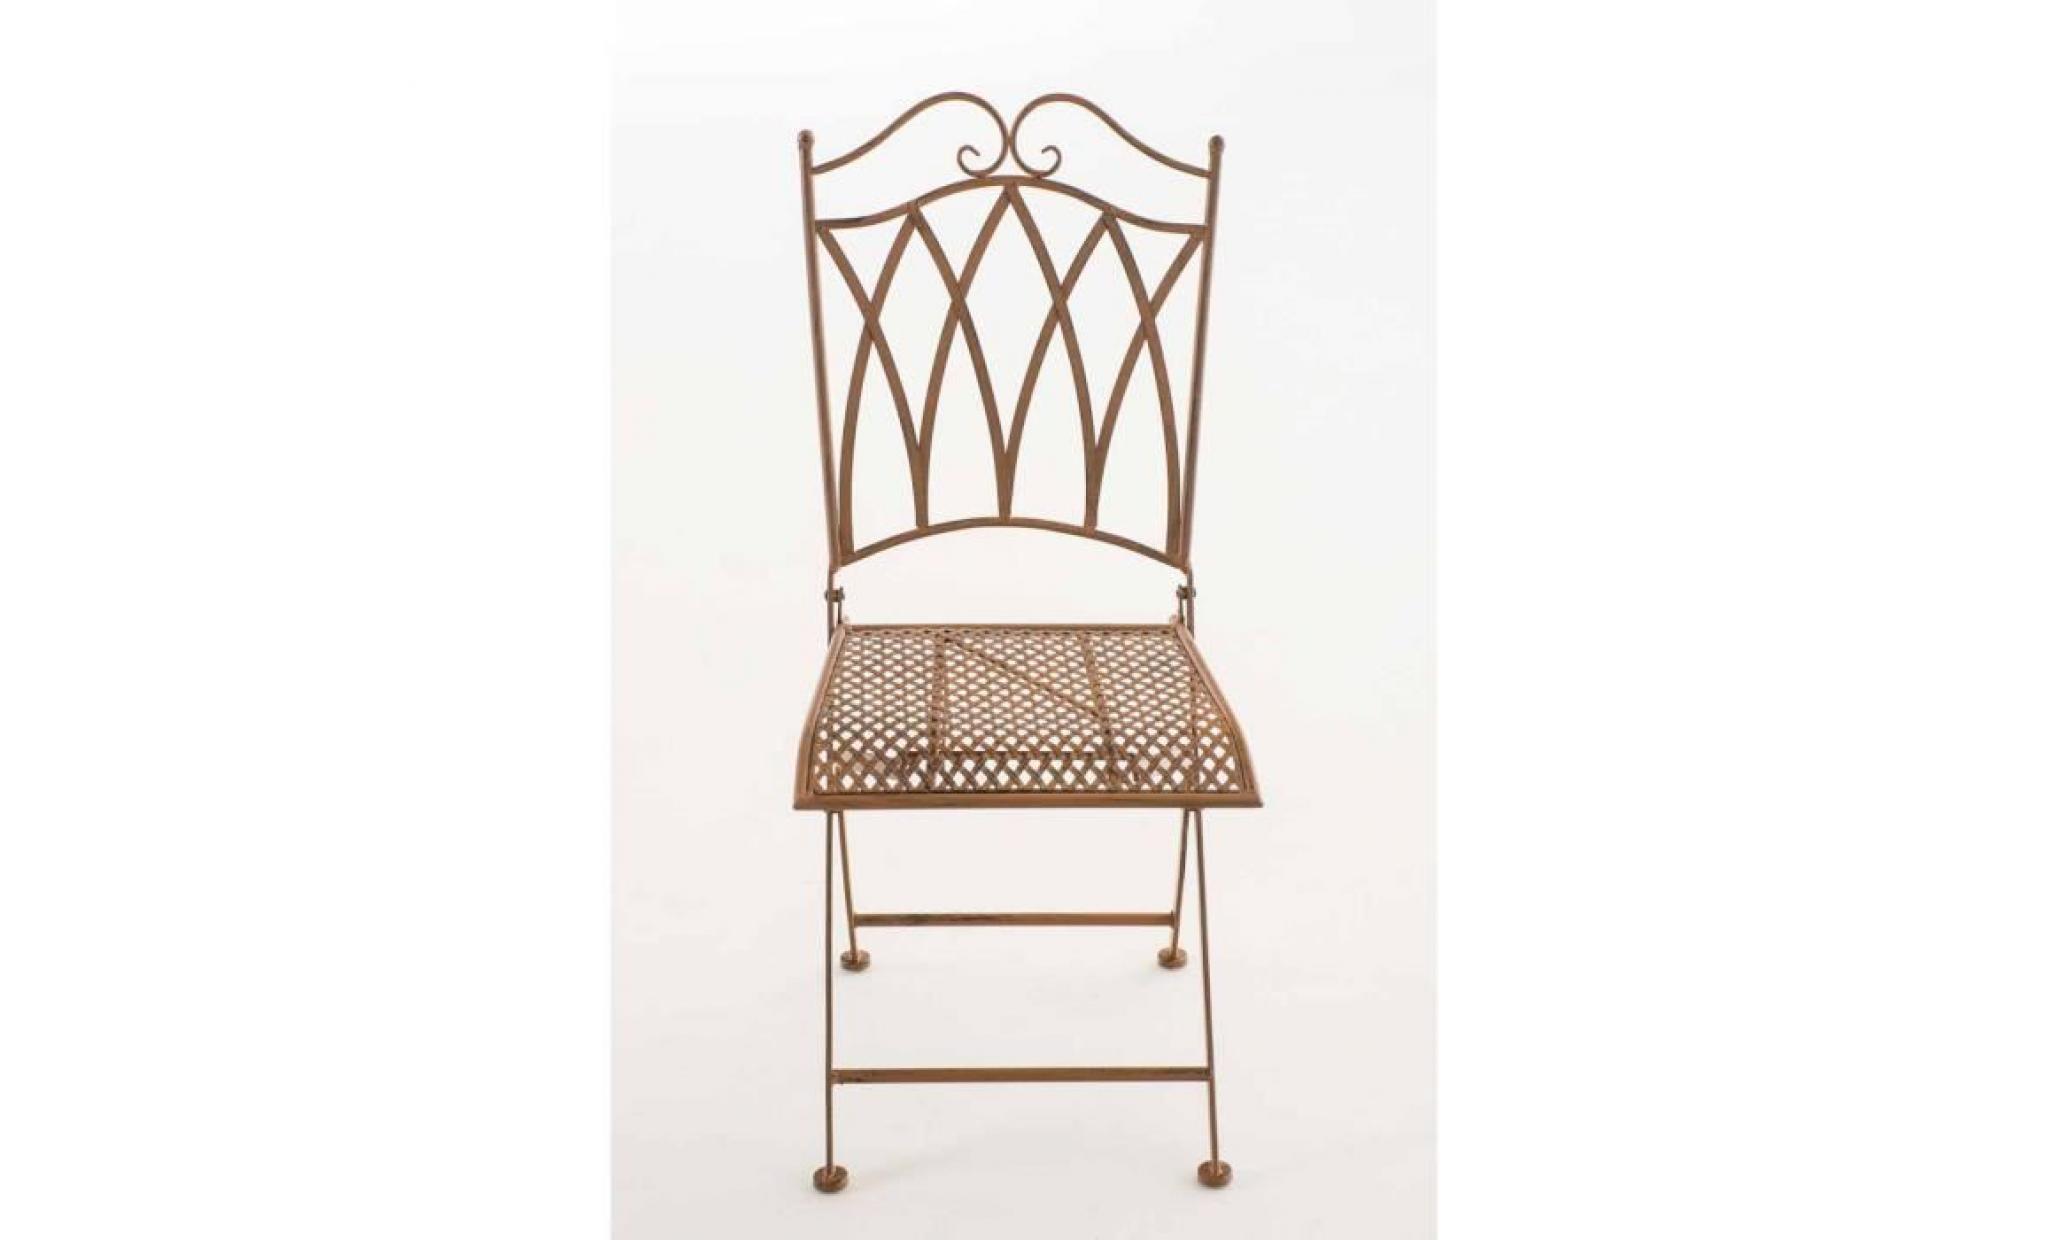 clp chaise nostalgique pliable lunis, chaise fer forgé, chaise pliante, chaise antique, 6 couleurs au choix 91 cm marron antique pas cher